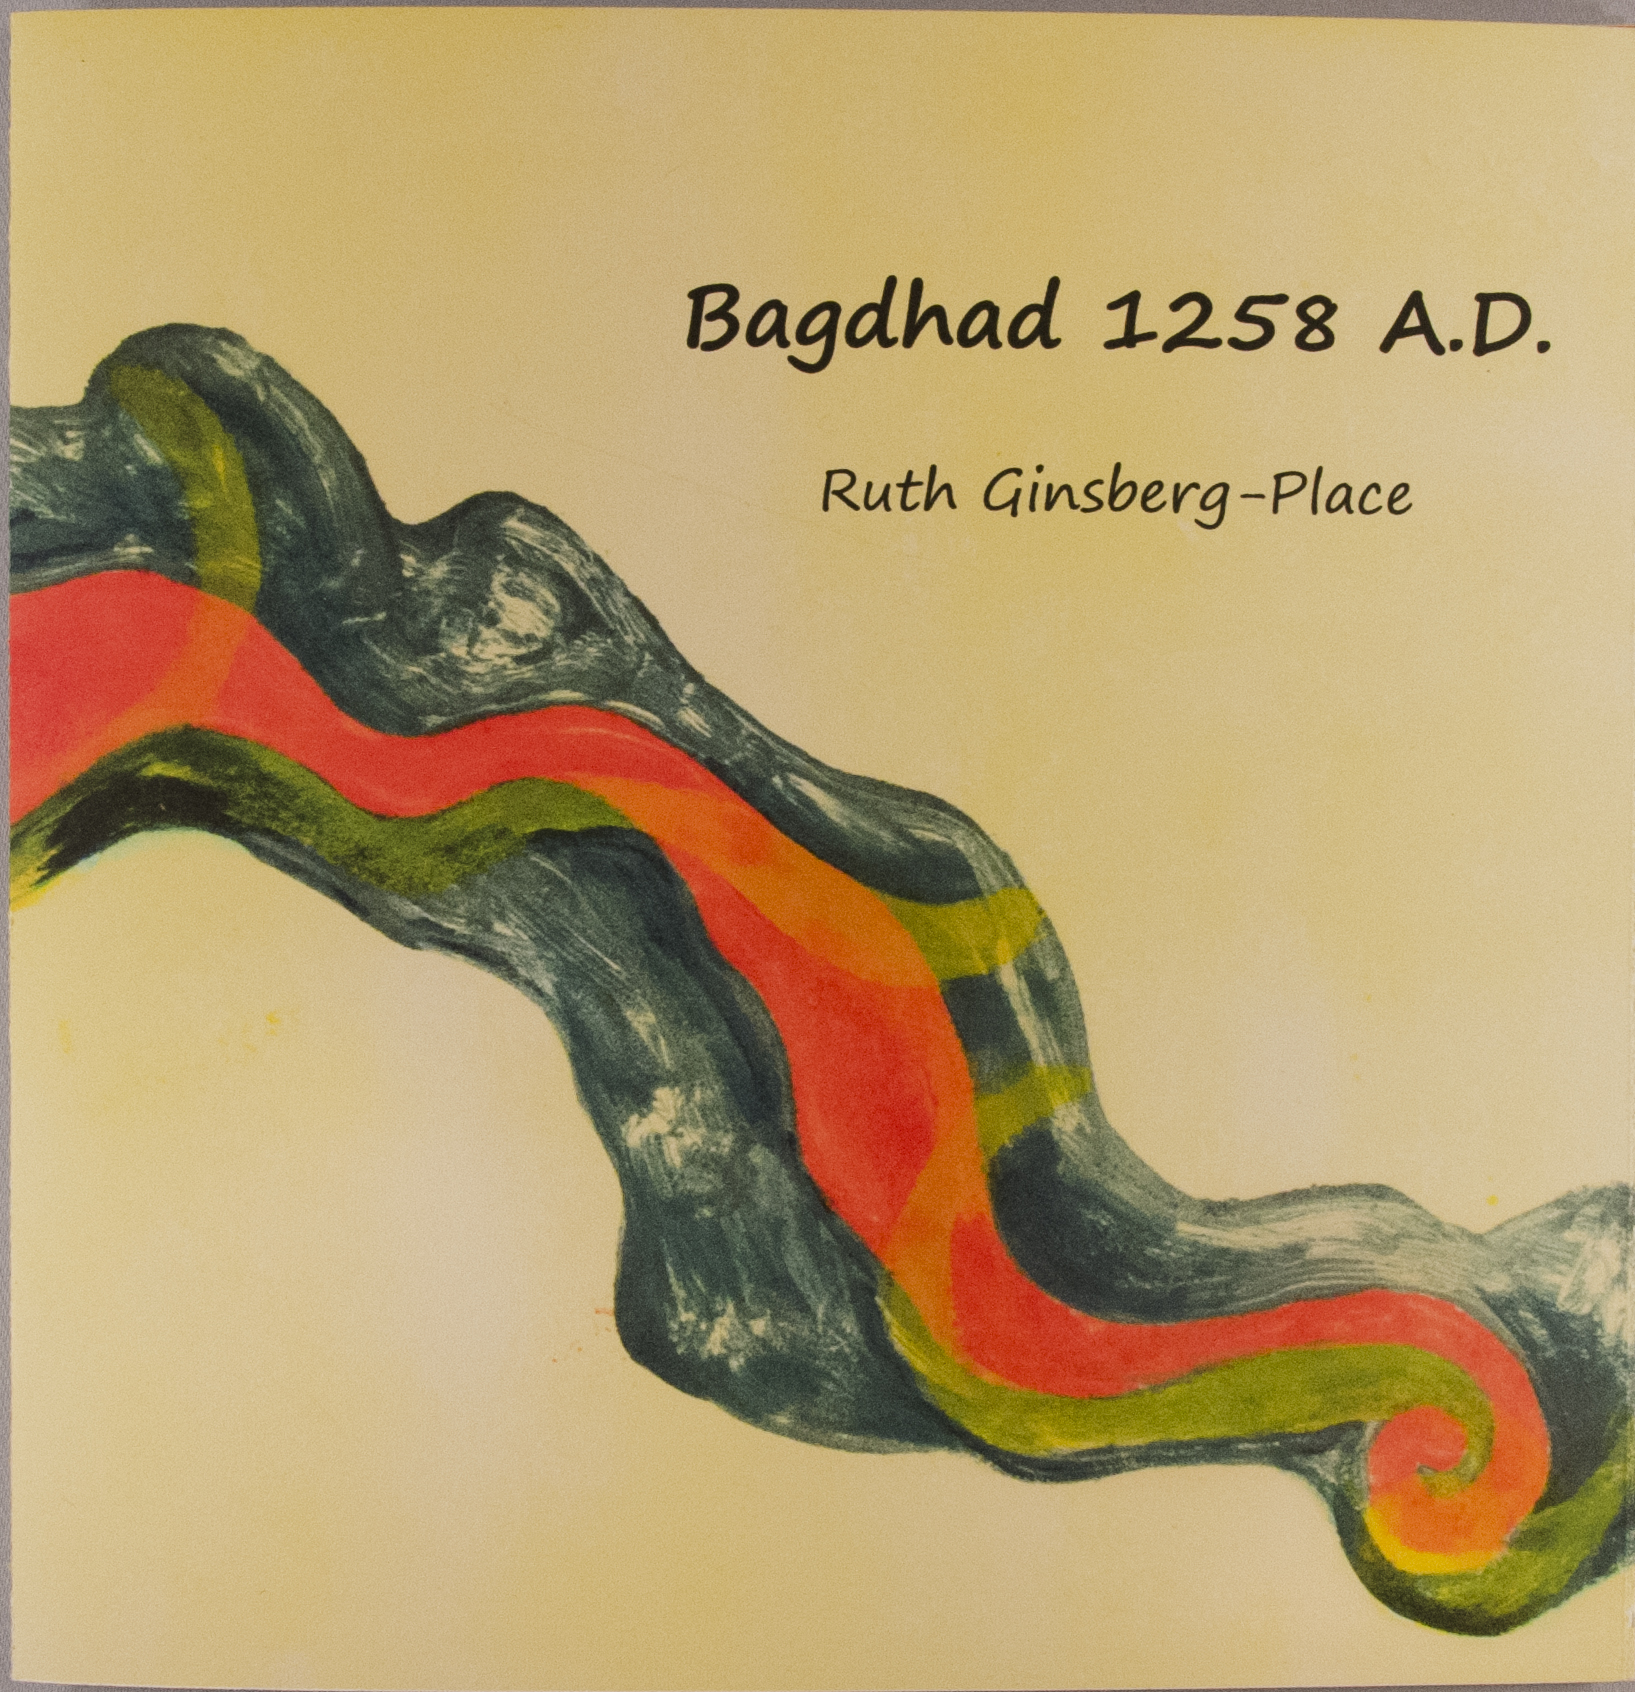 Baghdad 1258 A.D.